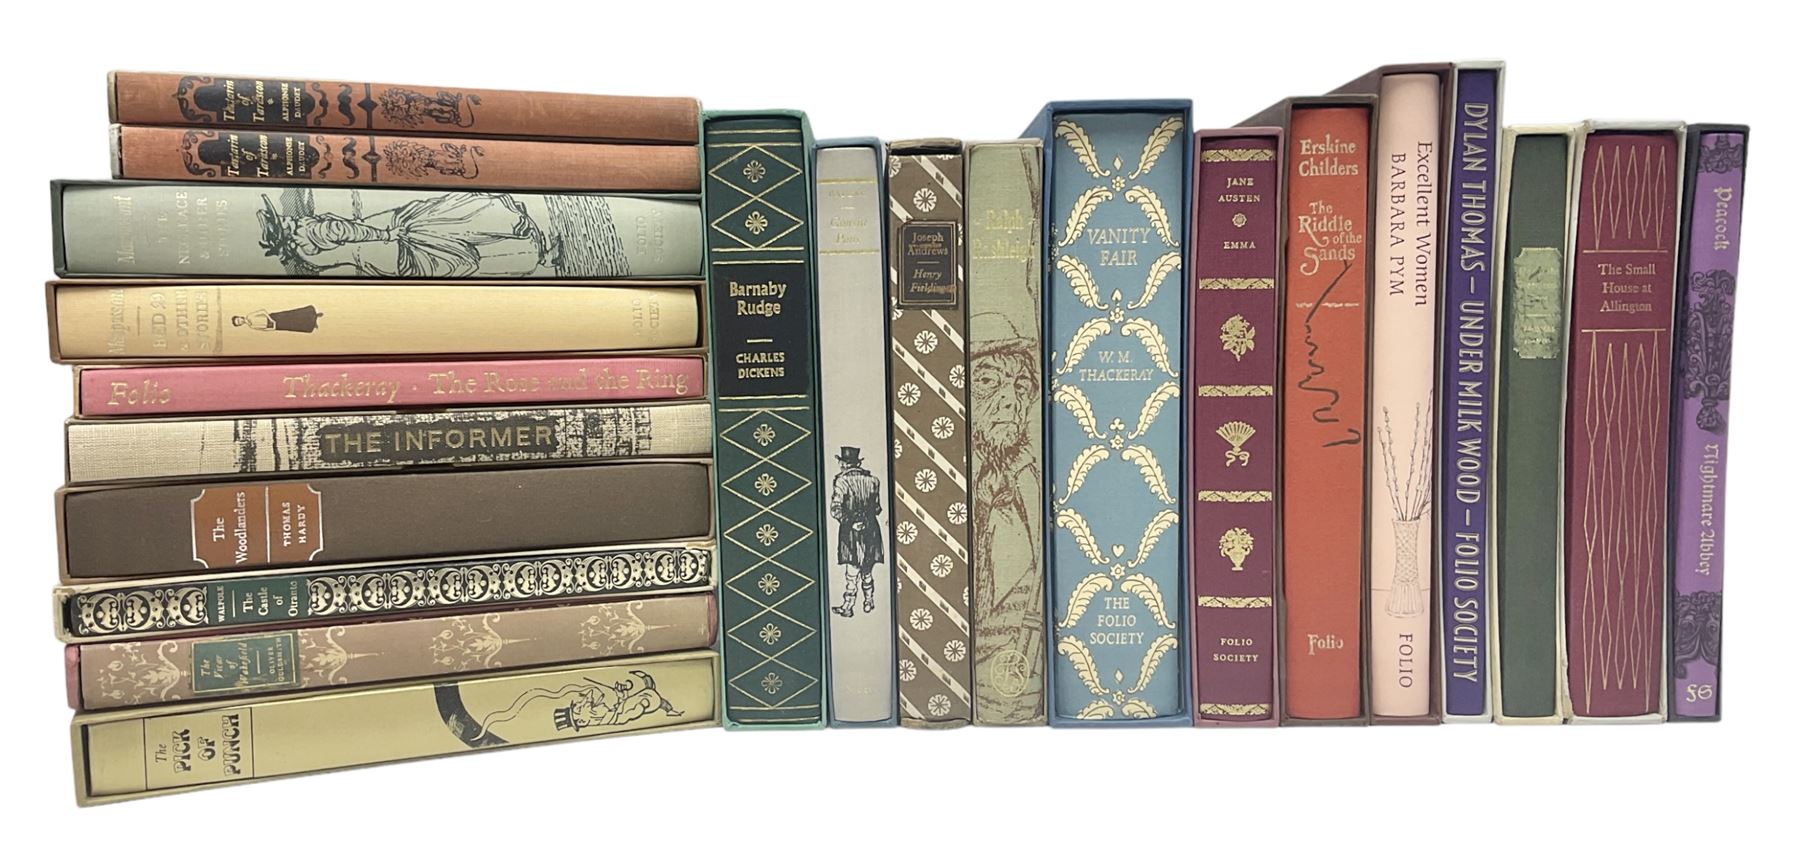 Folio Society; twenty two volumes